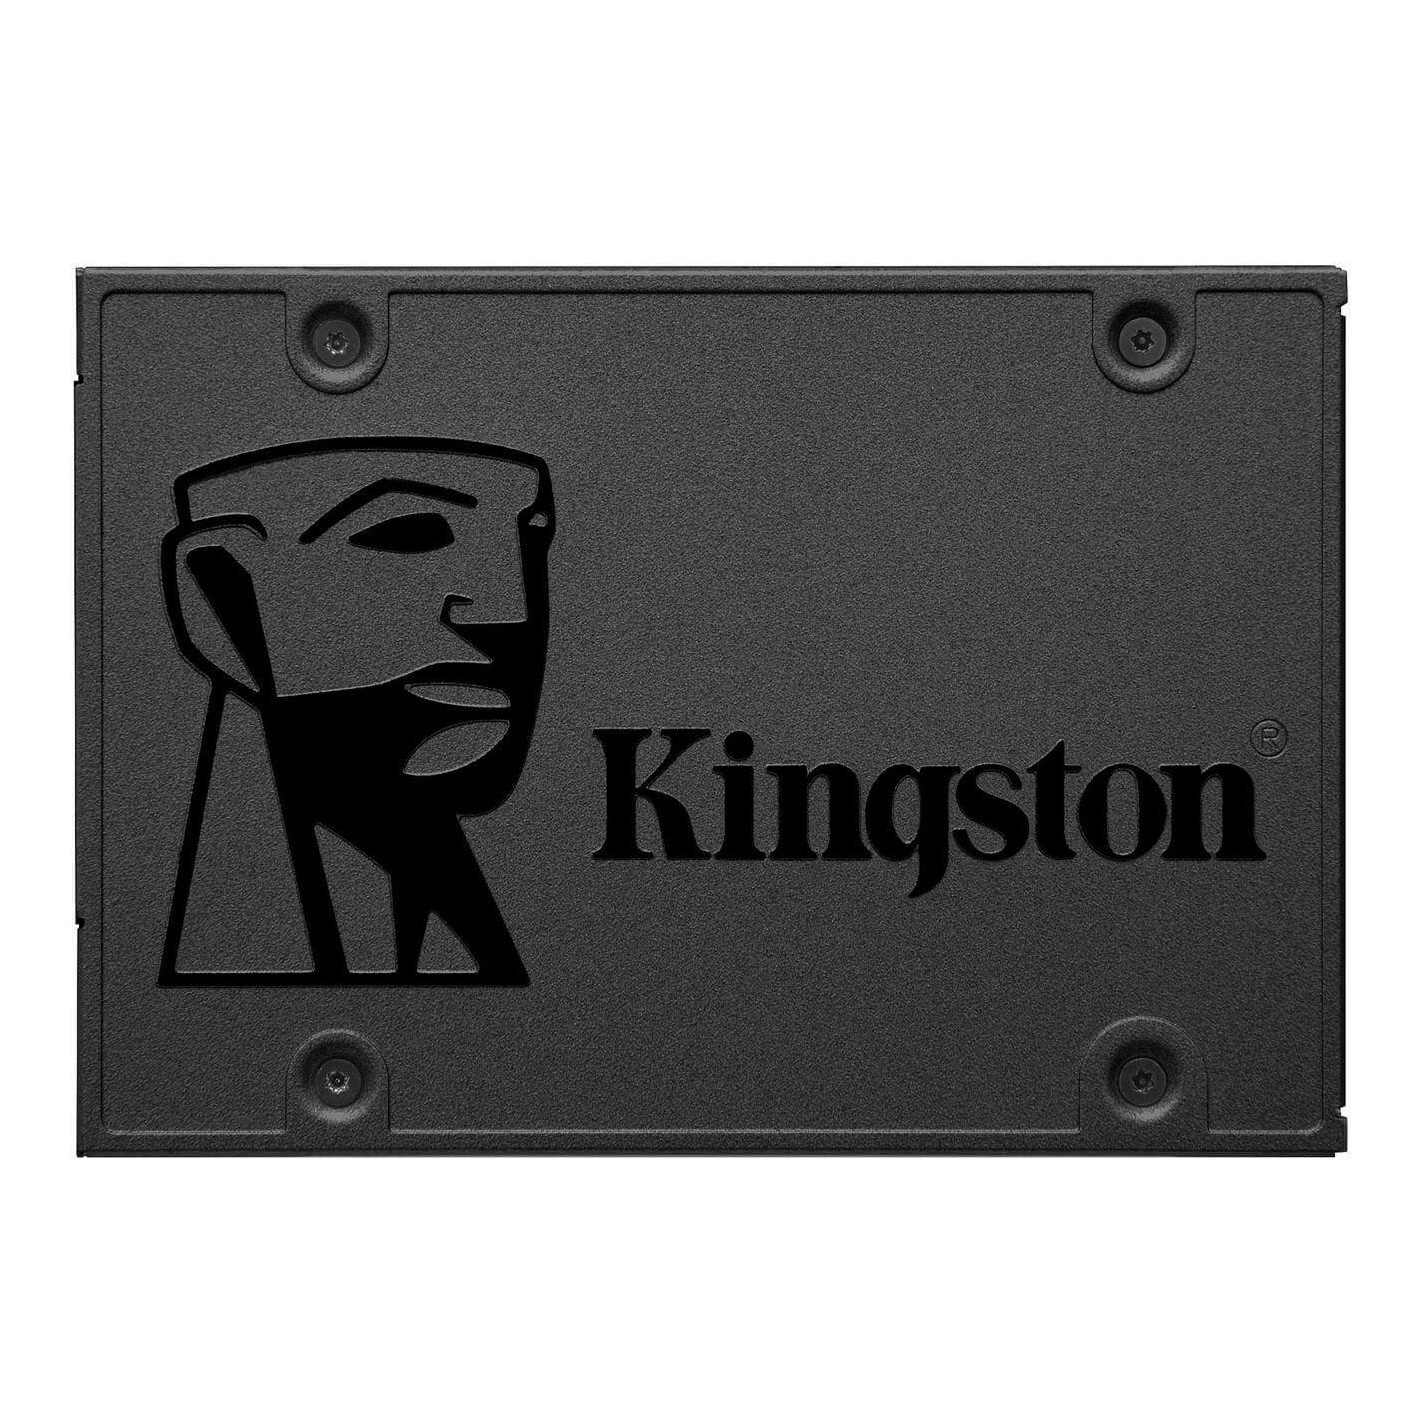 HDD SSD 480Gb Kingston A400 2.5" SATA III